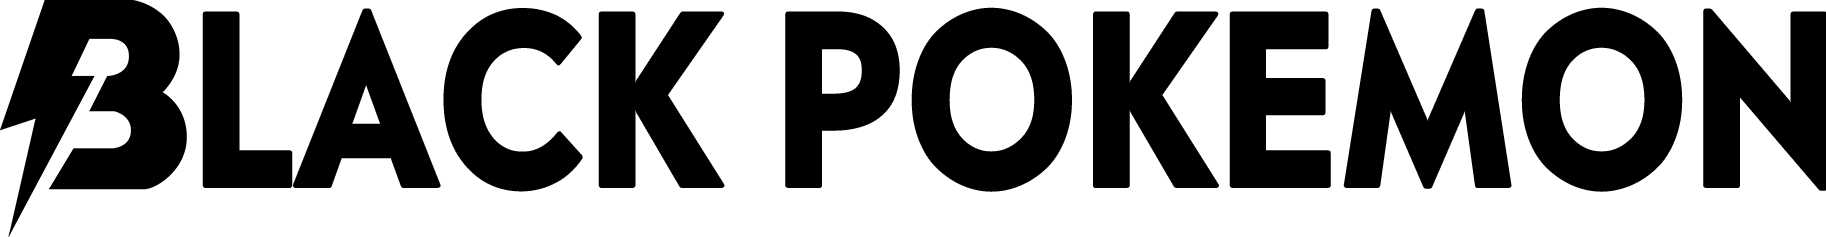 blackpokemon logo black